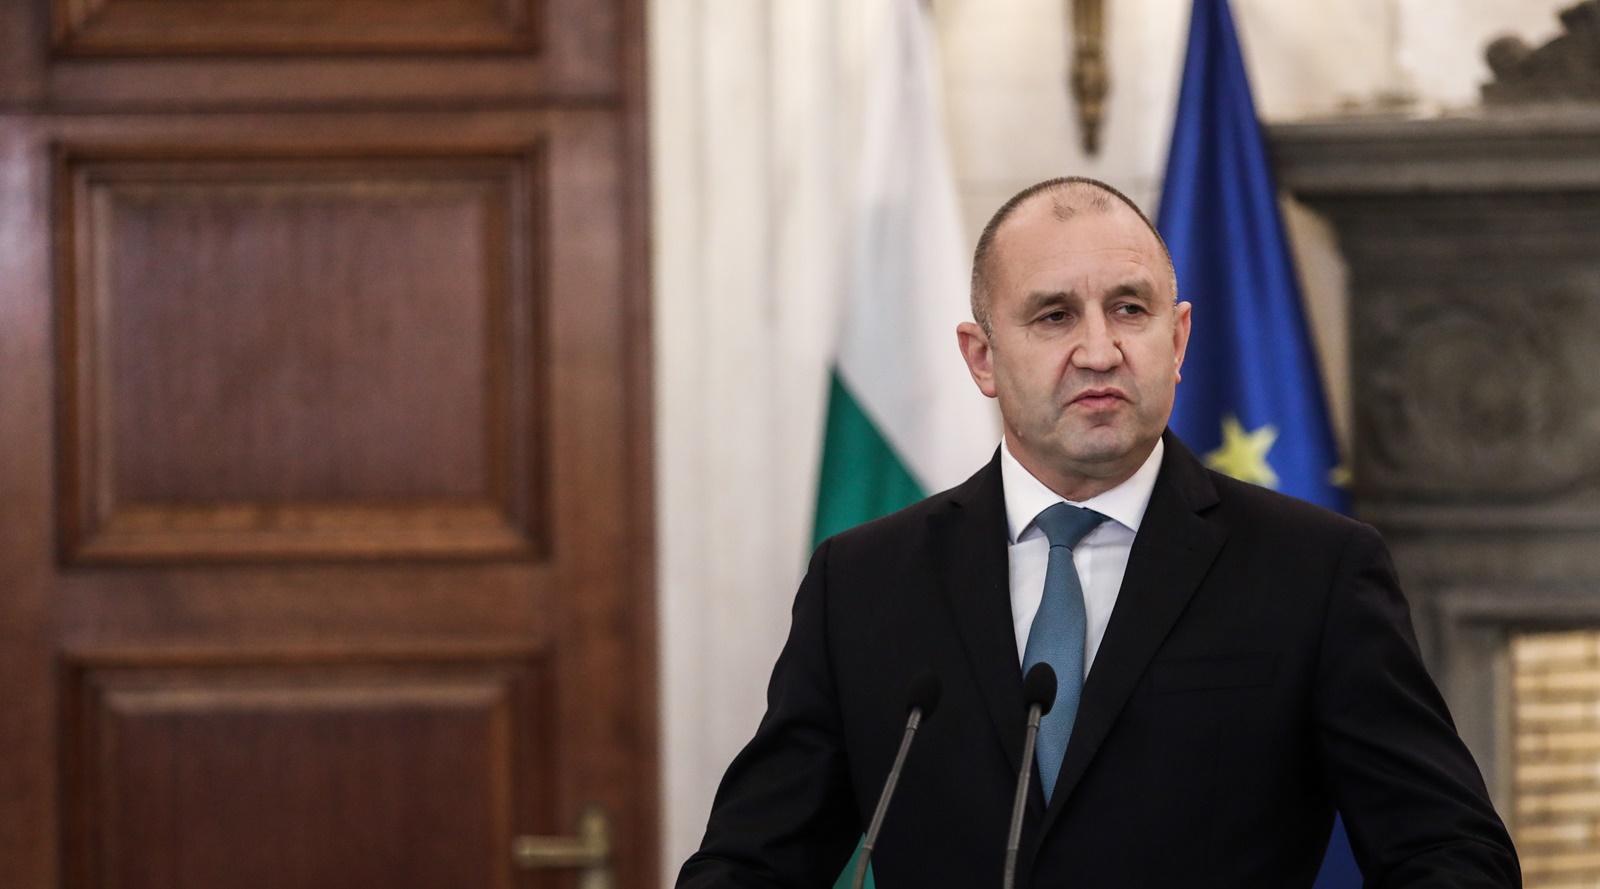 Πρόεδρος Βουλγαρίας: Δεν αποδεχόμαστε συμπεριφορές που παραβιάζουν τις συνθήκες που υπέγραψε η Βόρεια Μακεδονία